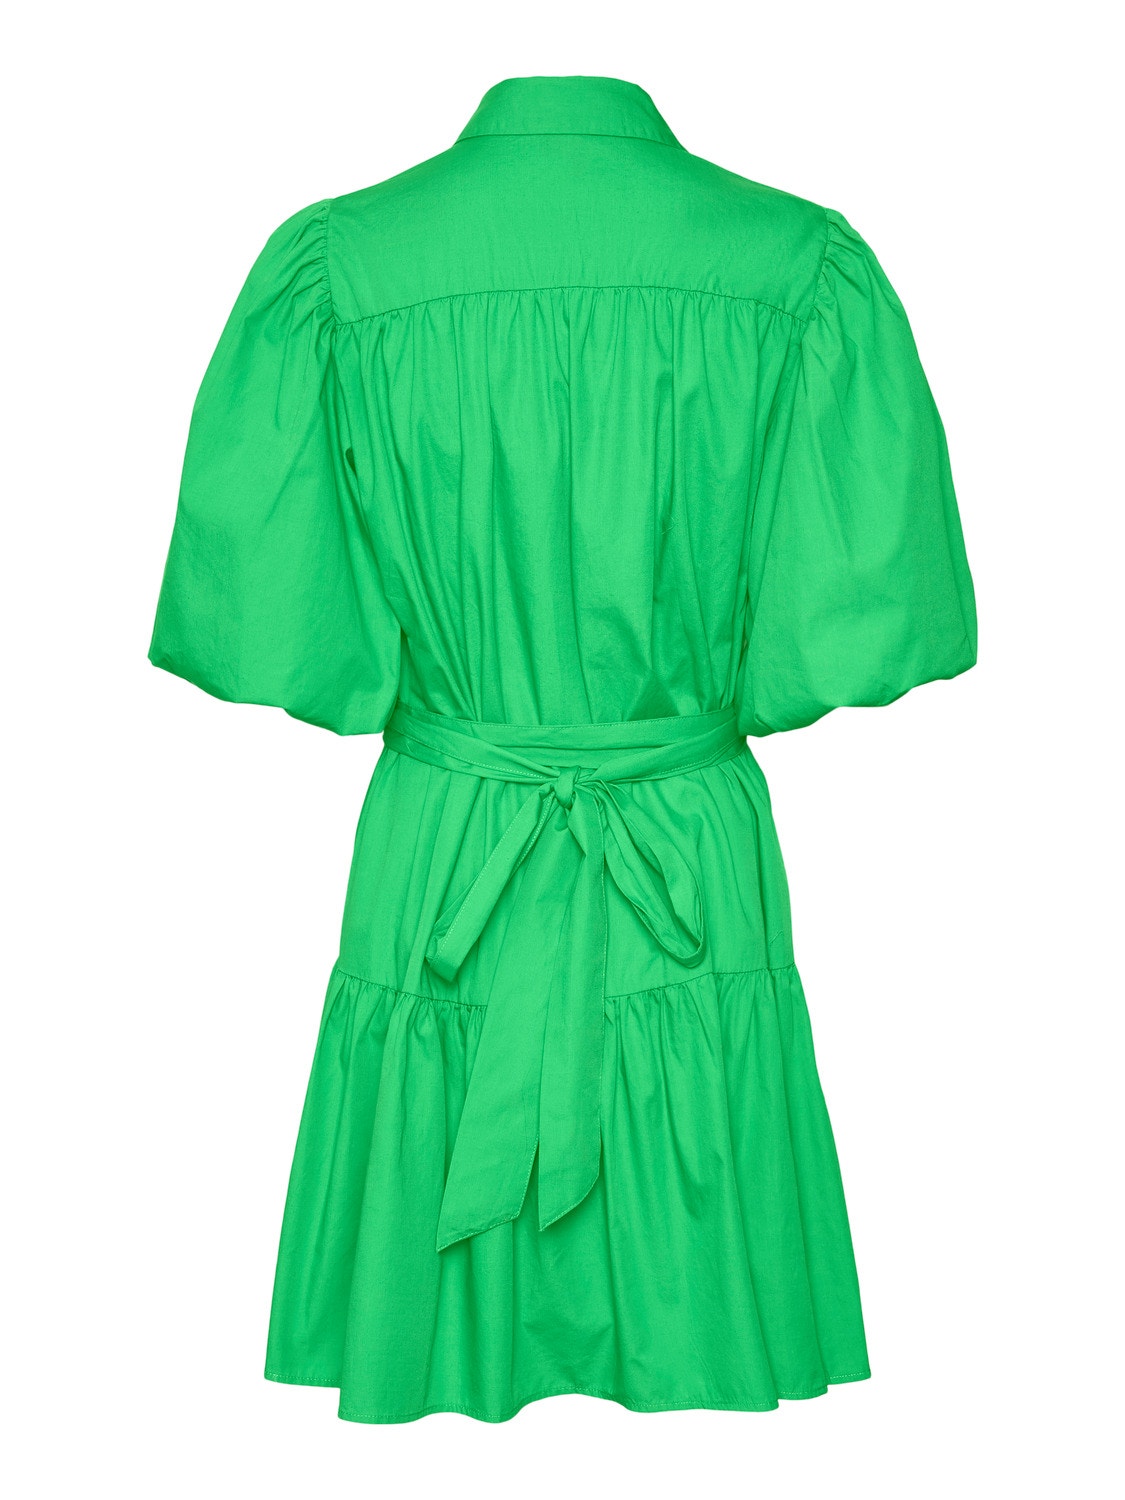 Vero Moda VMCHARLOTTE Short dress -Summer Green - 10291362